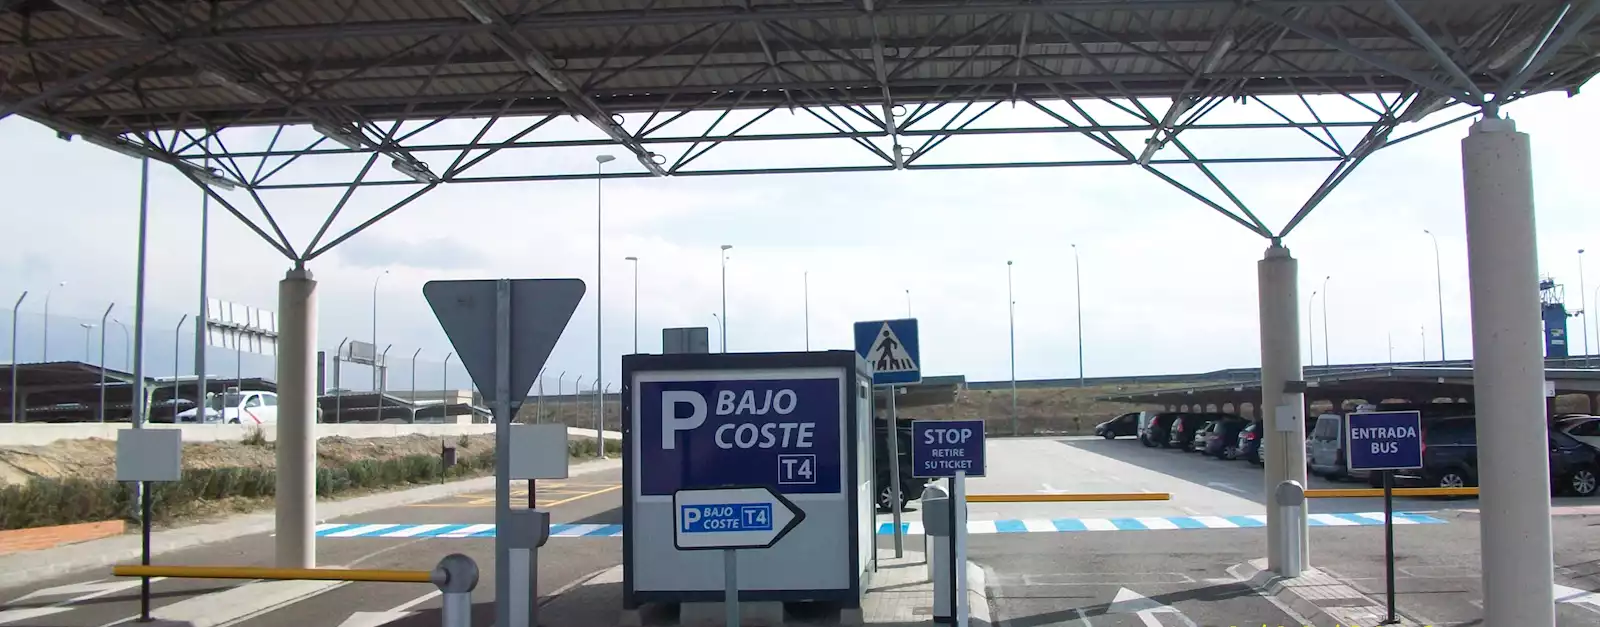 Parking Aeropuerto Barajas Bajo Coste T4